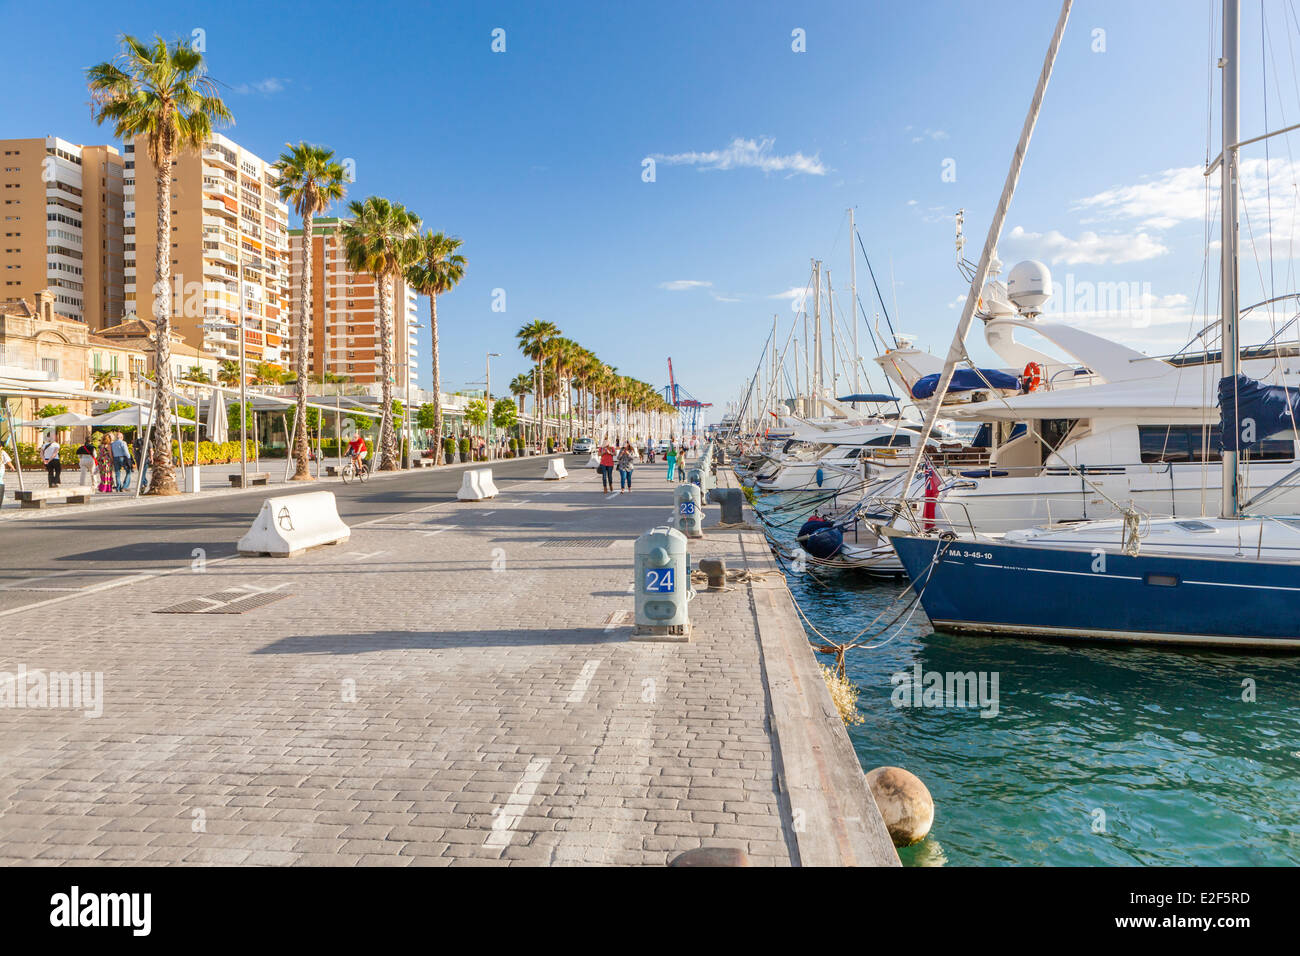 El puerto deportivo de Puerto Banús, Marbella, Málaga, Costa del Sol,  Andalucía, España, Europa Fotografía de stock - Alamy